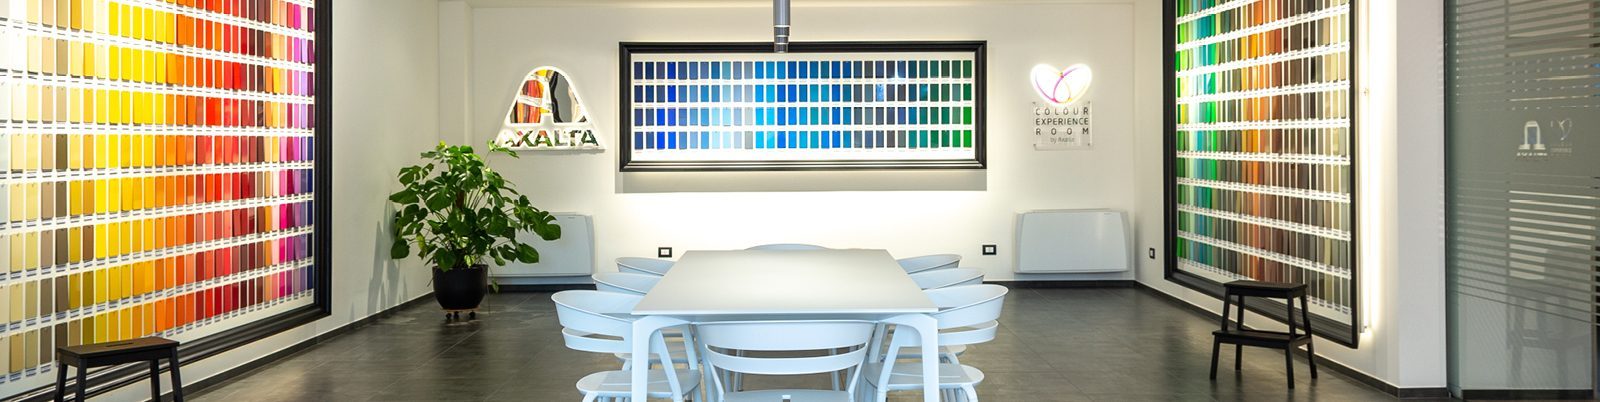 Colour Experience Room by Axalta